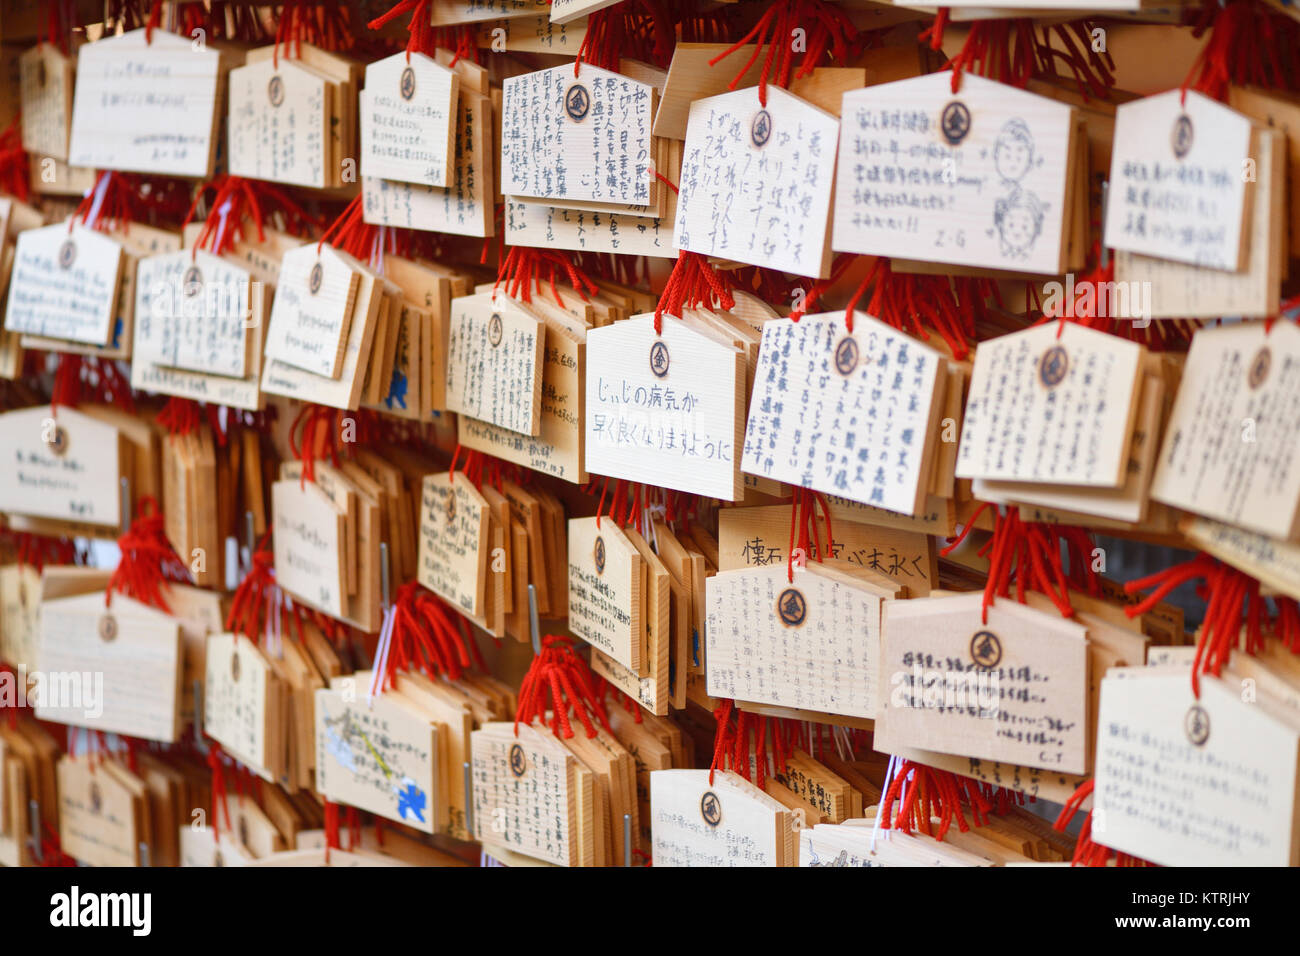 Ema, le Japonais qui souhaitent en bois avec des plaques de prières et voeux écrits sur eux, suspendu à un temple Shinto à Kyoto, au Japon. Banque D'Images